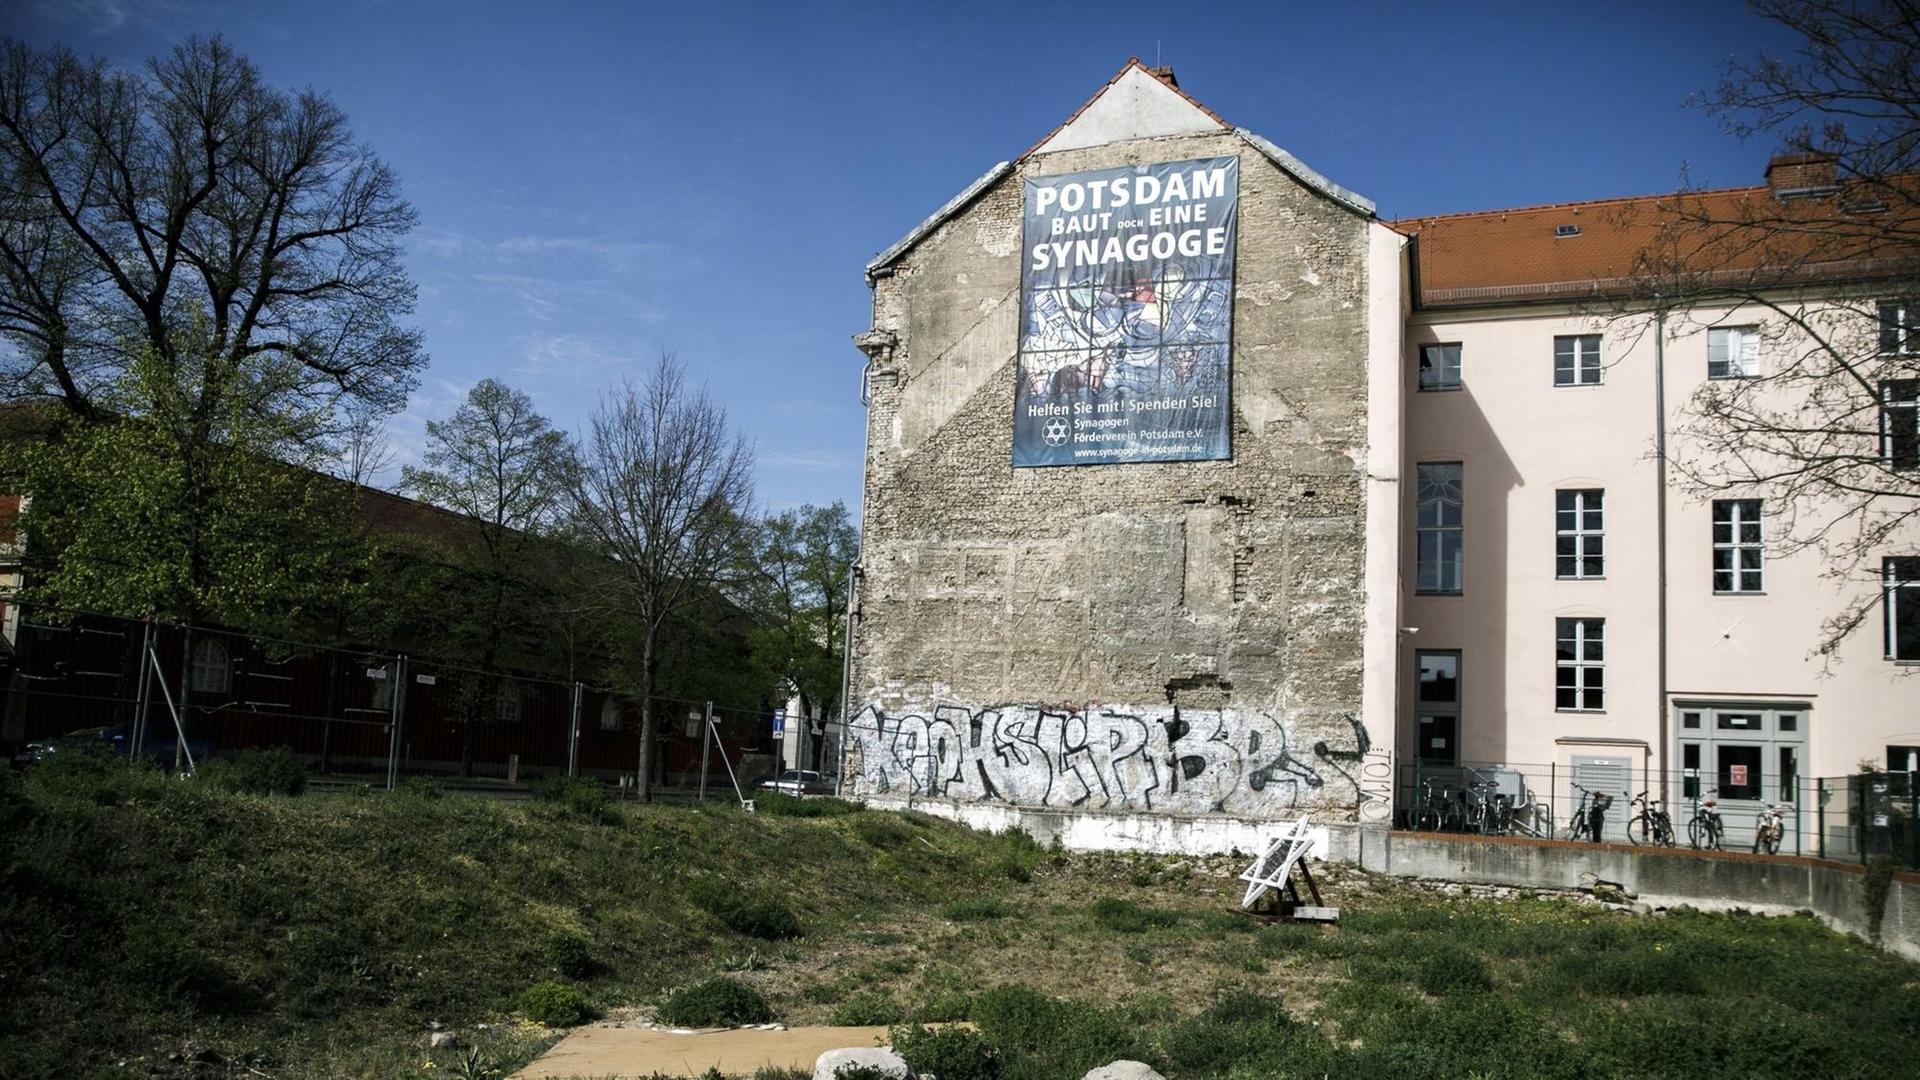 24.04.2020, Brandenburg, Potsdam: An der Mauer eines Wohnhauses hängt ein Plakat mit der Aufschrift "Potsdam baut doch eine Synagoge". Das Grundstück gegenüber dem Filmmuseum war vom Land Brandenburg für den Bau der Neuen Synagoge zur Verfügung gestellt worden.